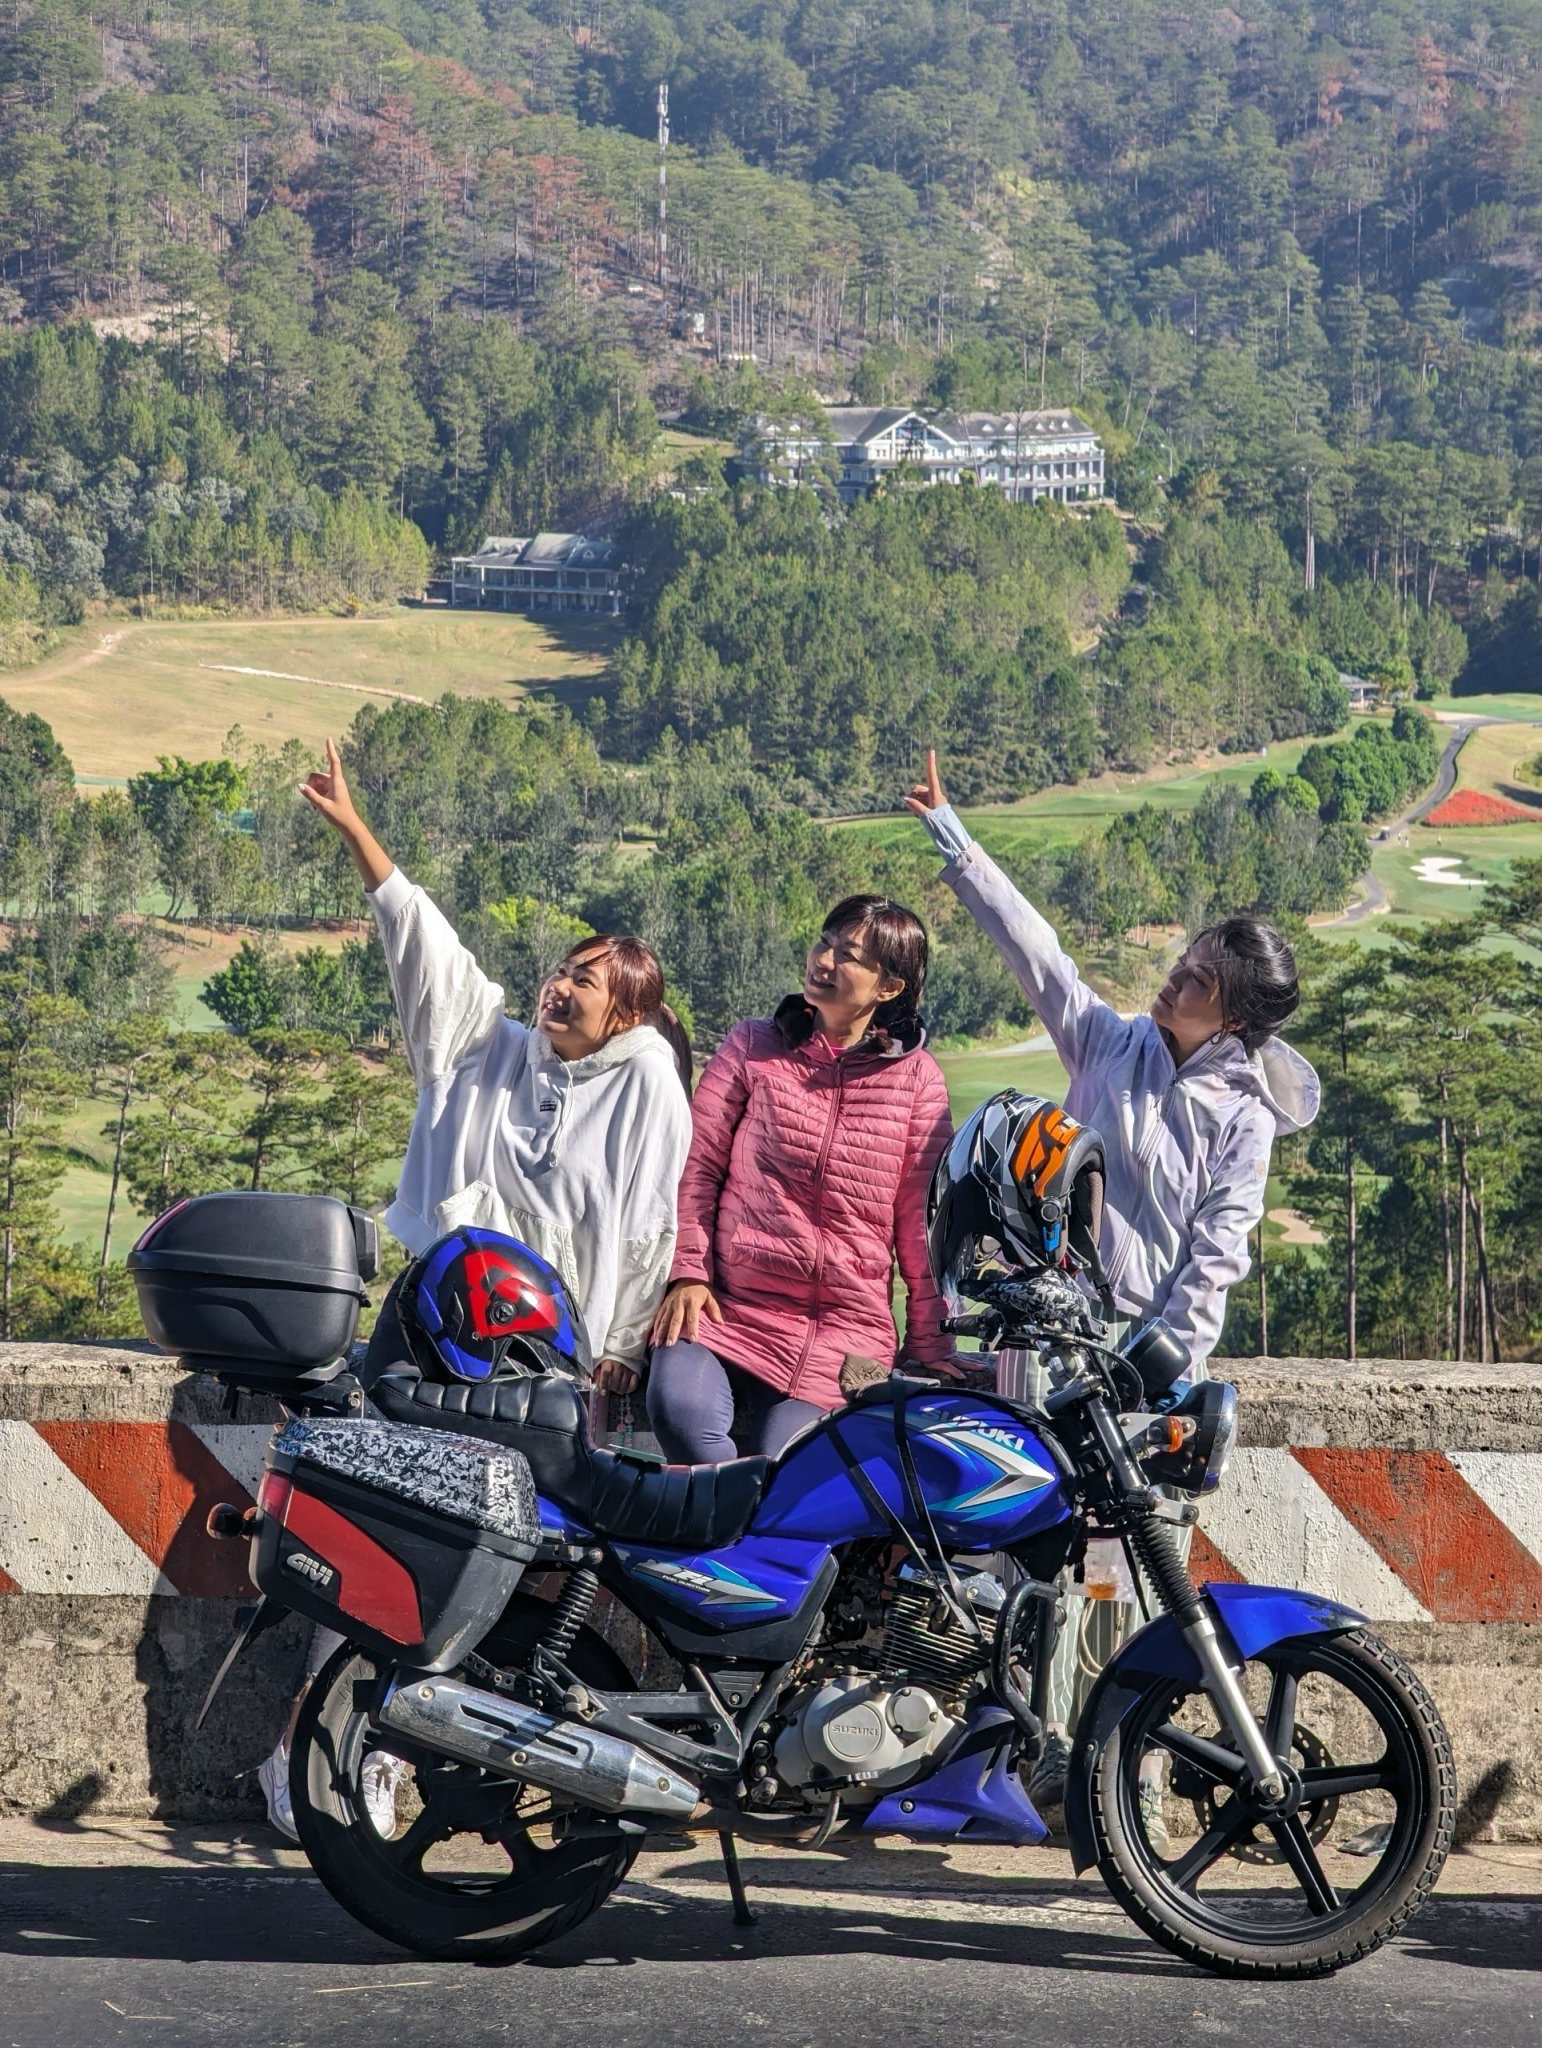 大叻鄉村環線摩托車一日遊